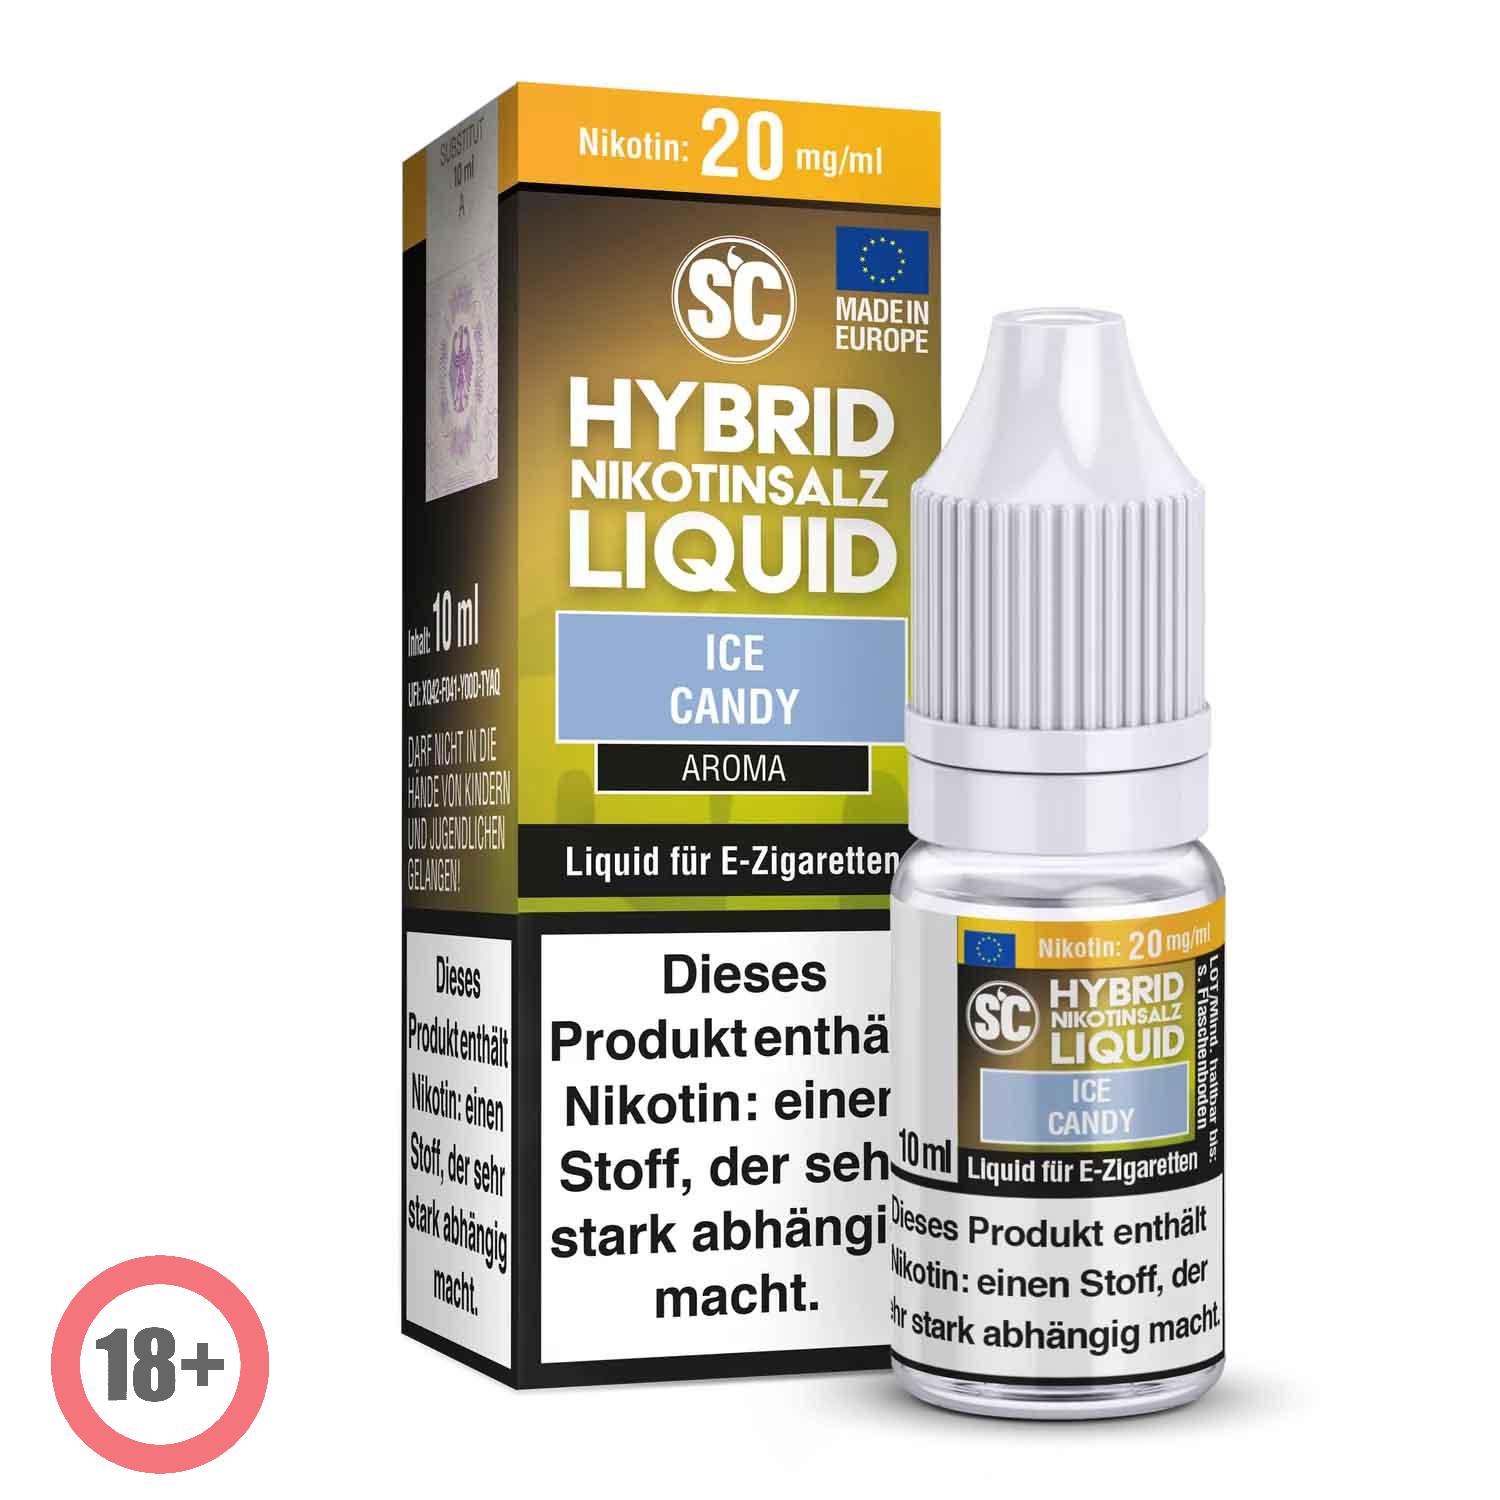 SC - Ice Candy Hybrid Nikotinsalz Liquid ✅ Günstig kaufen! 